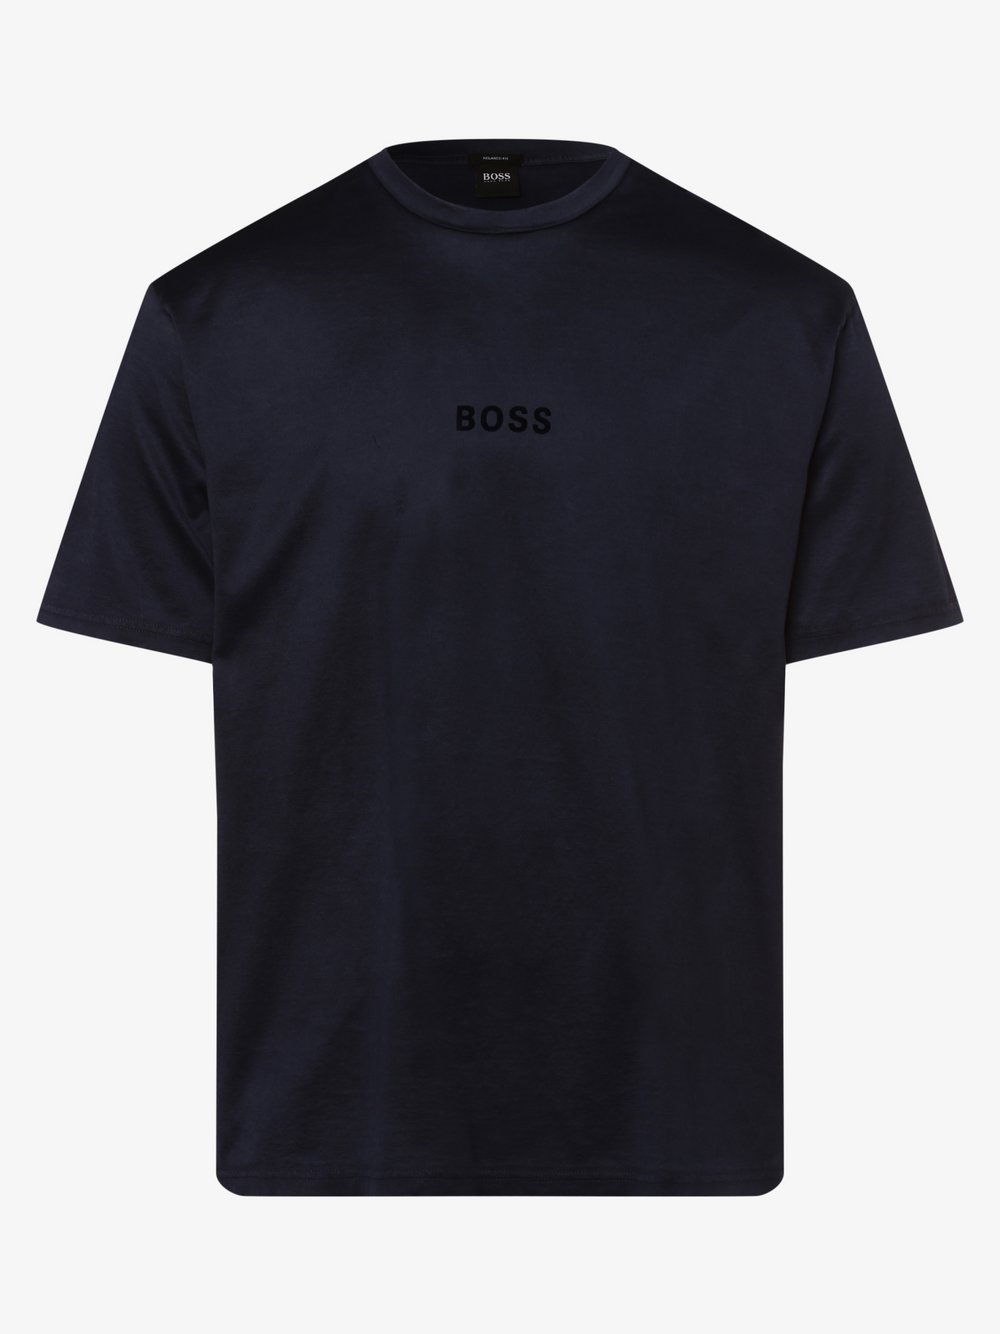 BOSS Casual - T-shirt męski – Tebeautiful, niebieski